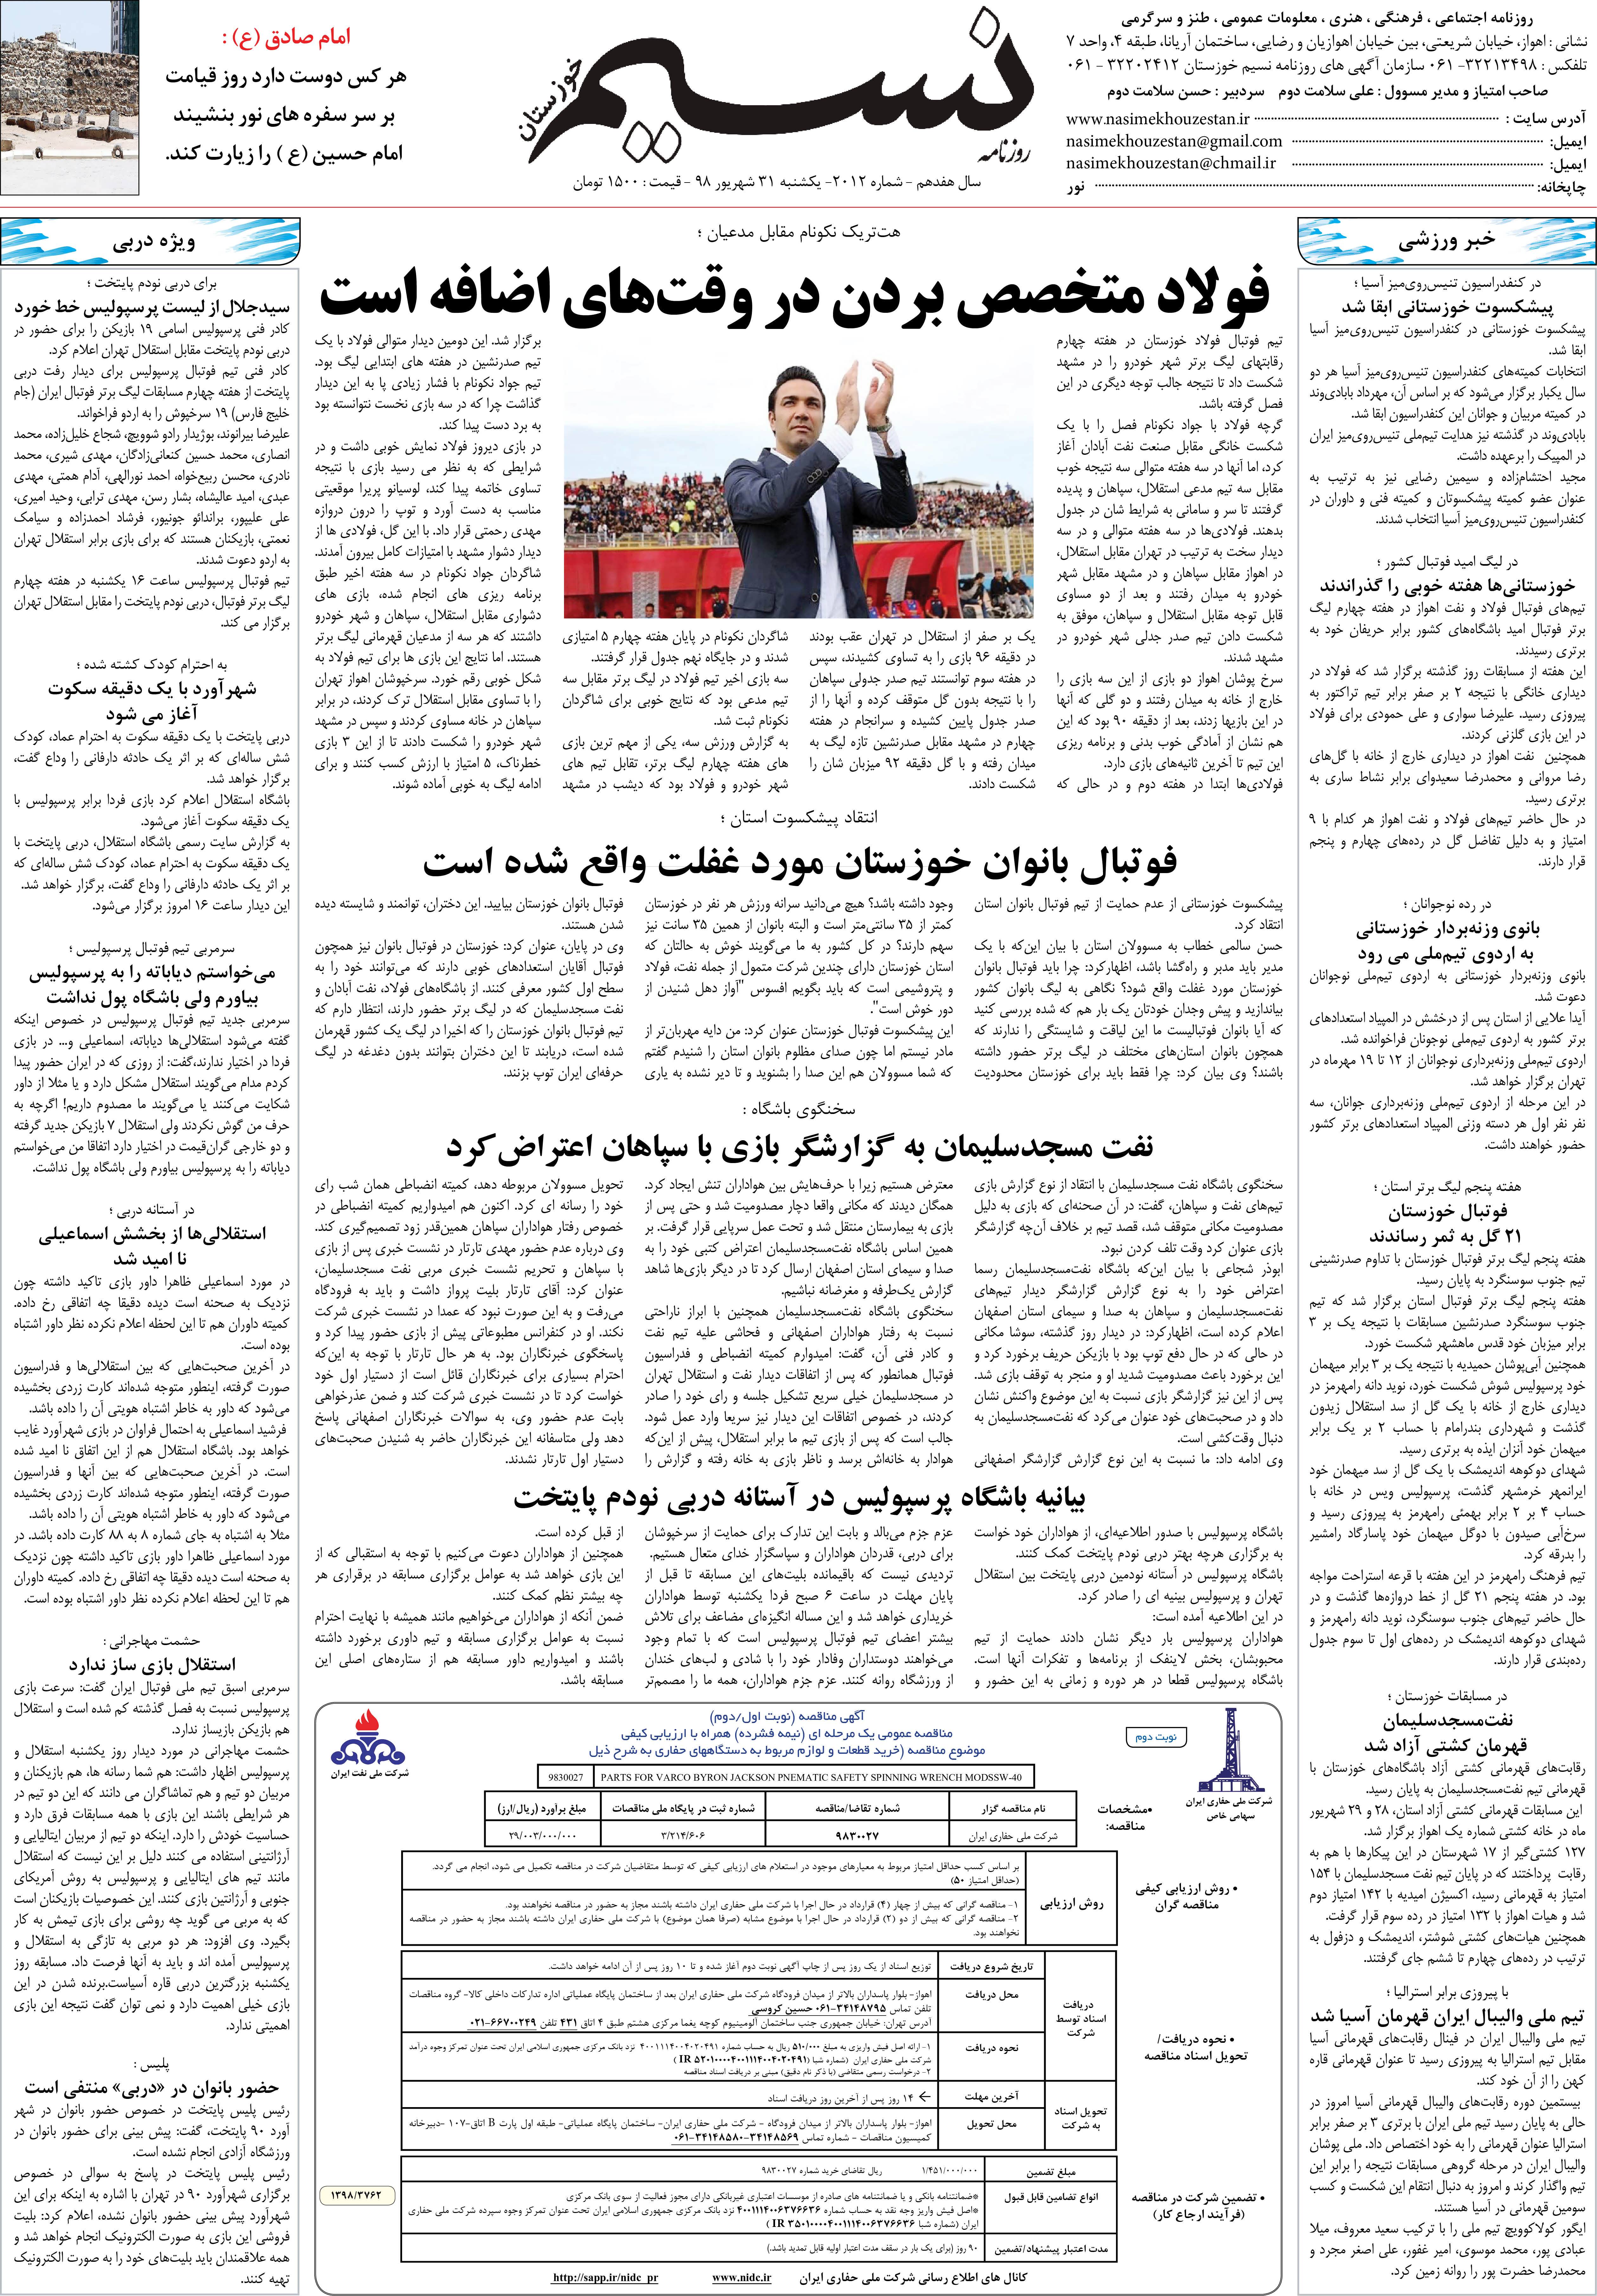 صفحه آخر روزنامه نسیم شماره 2012